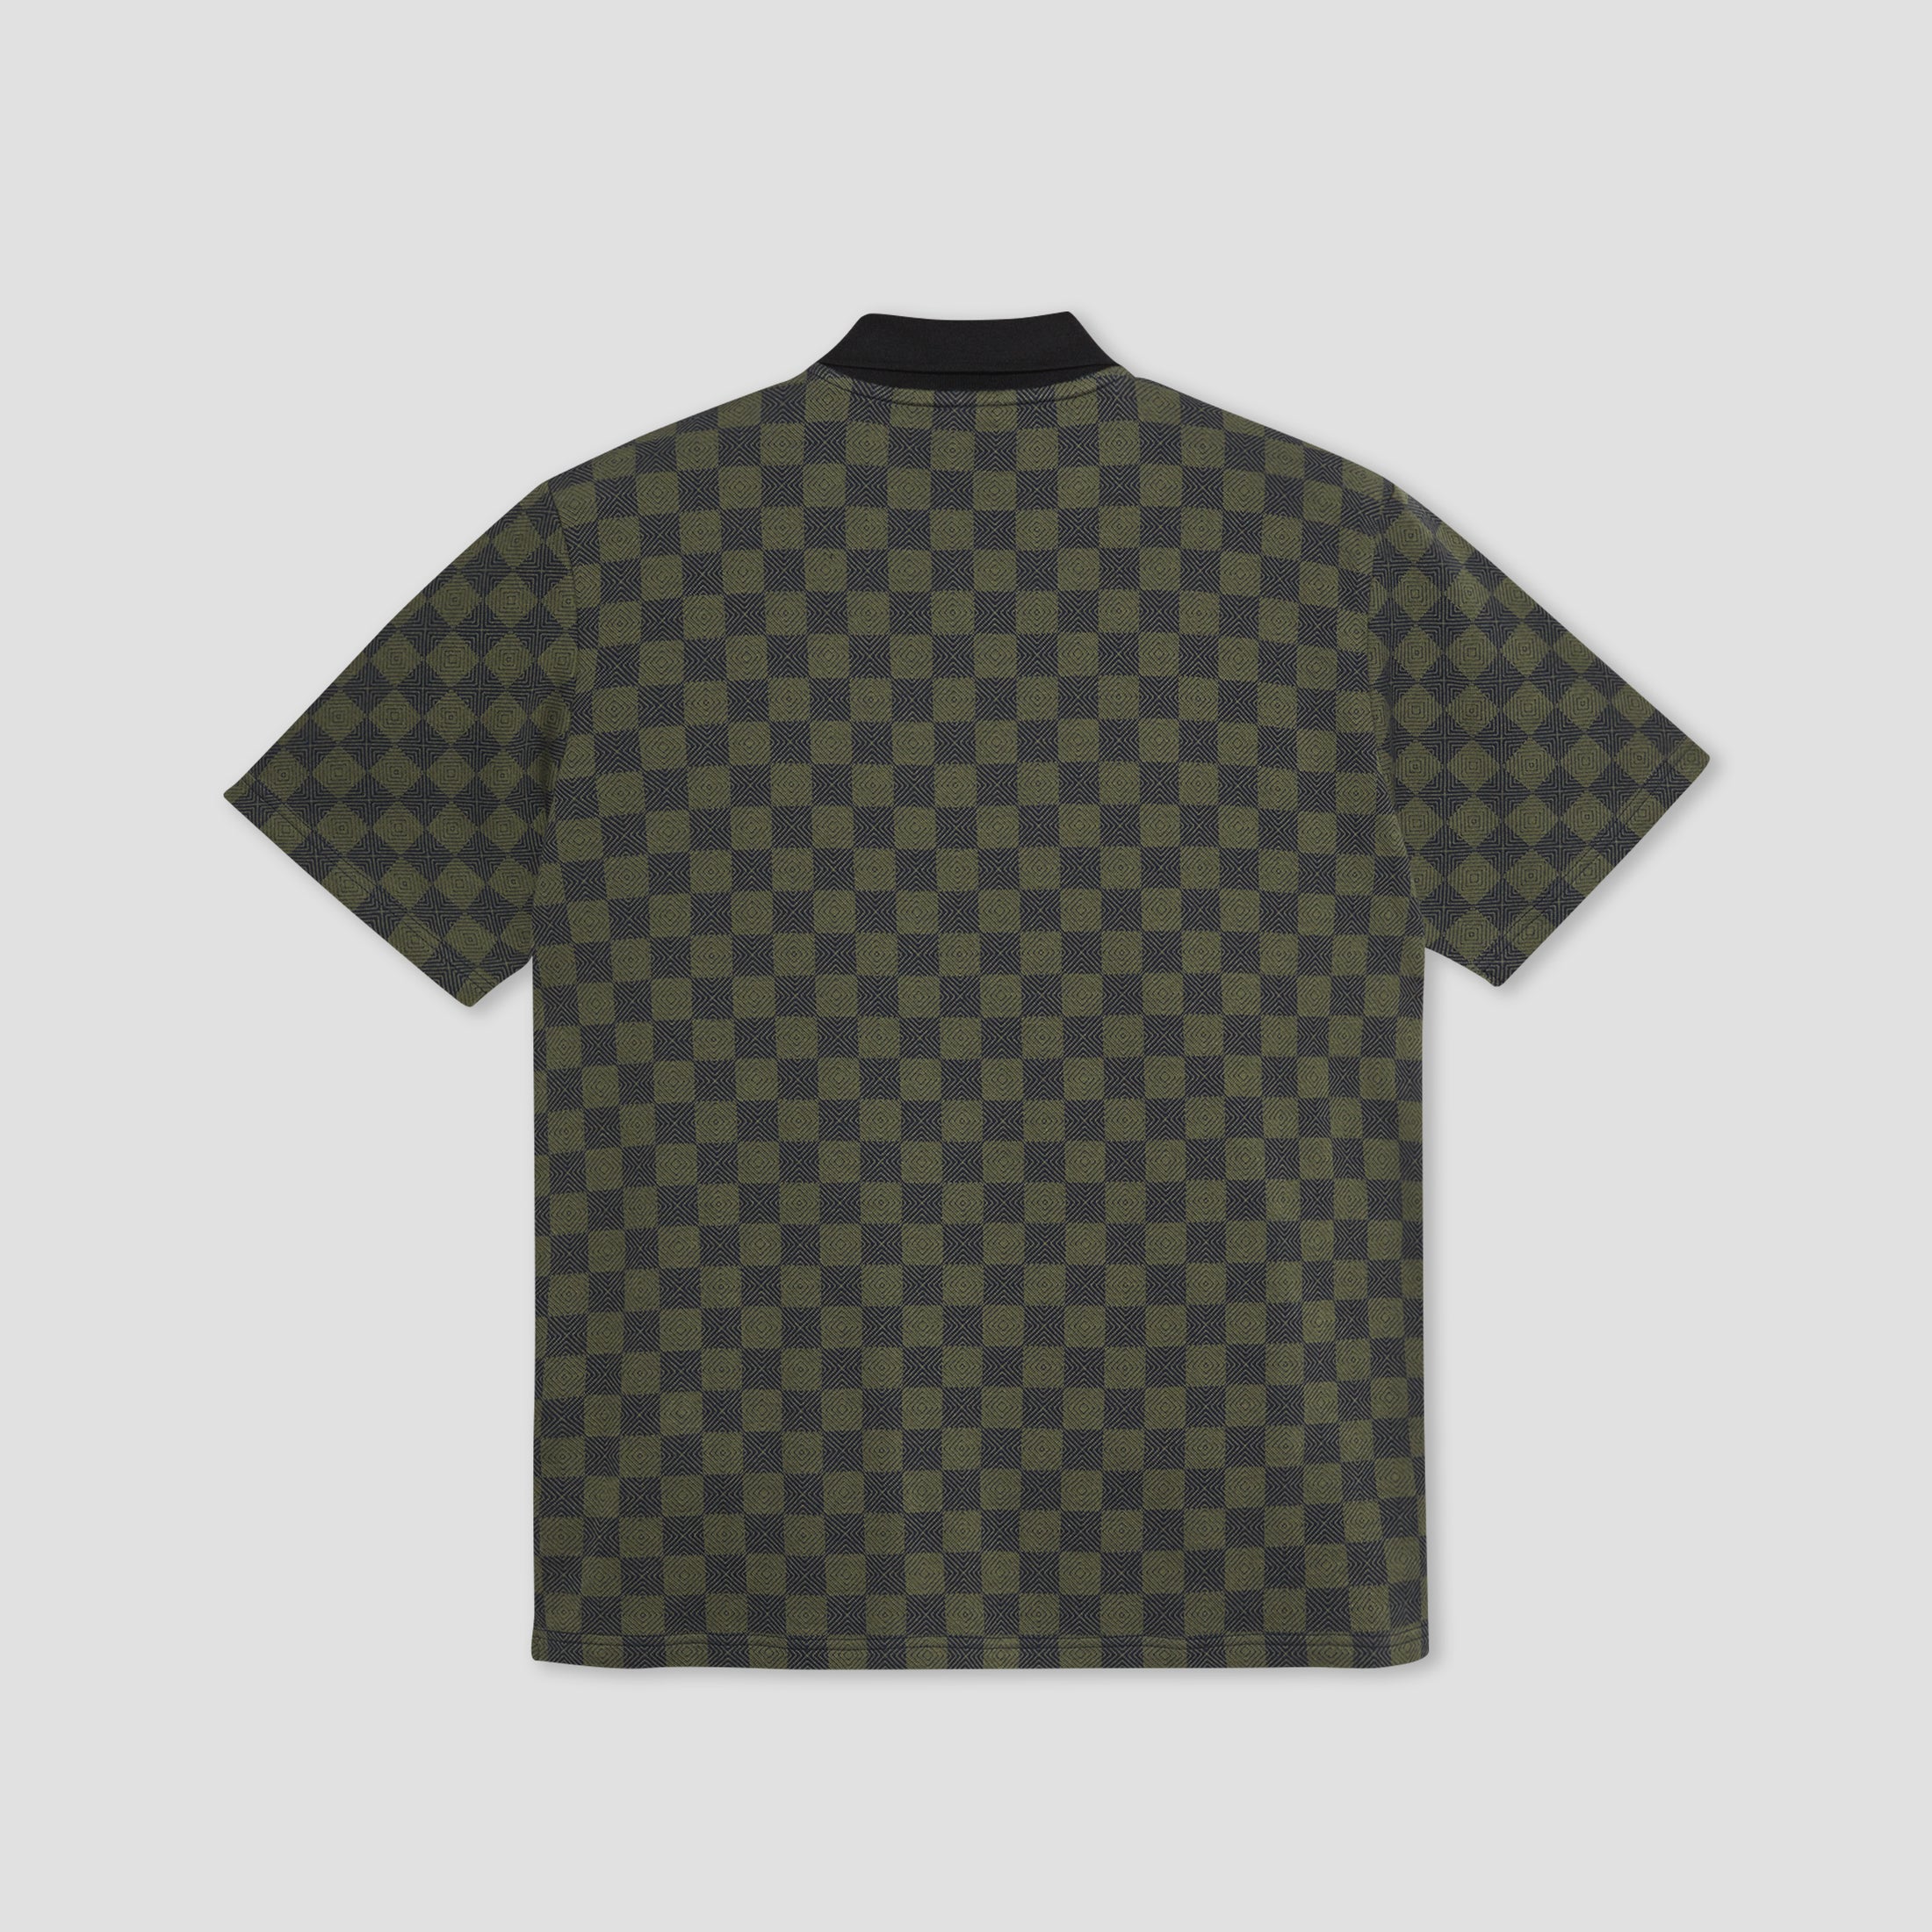 Polar Jacques Polo Shirt Checkered Black / Green